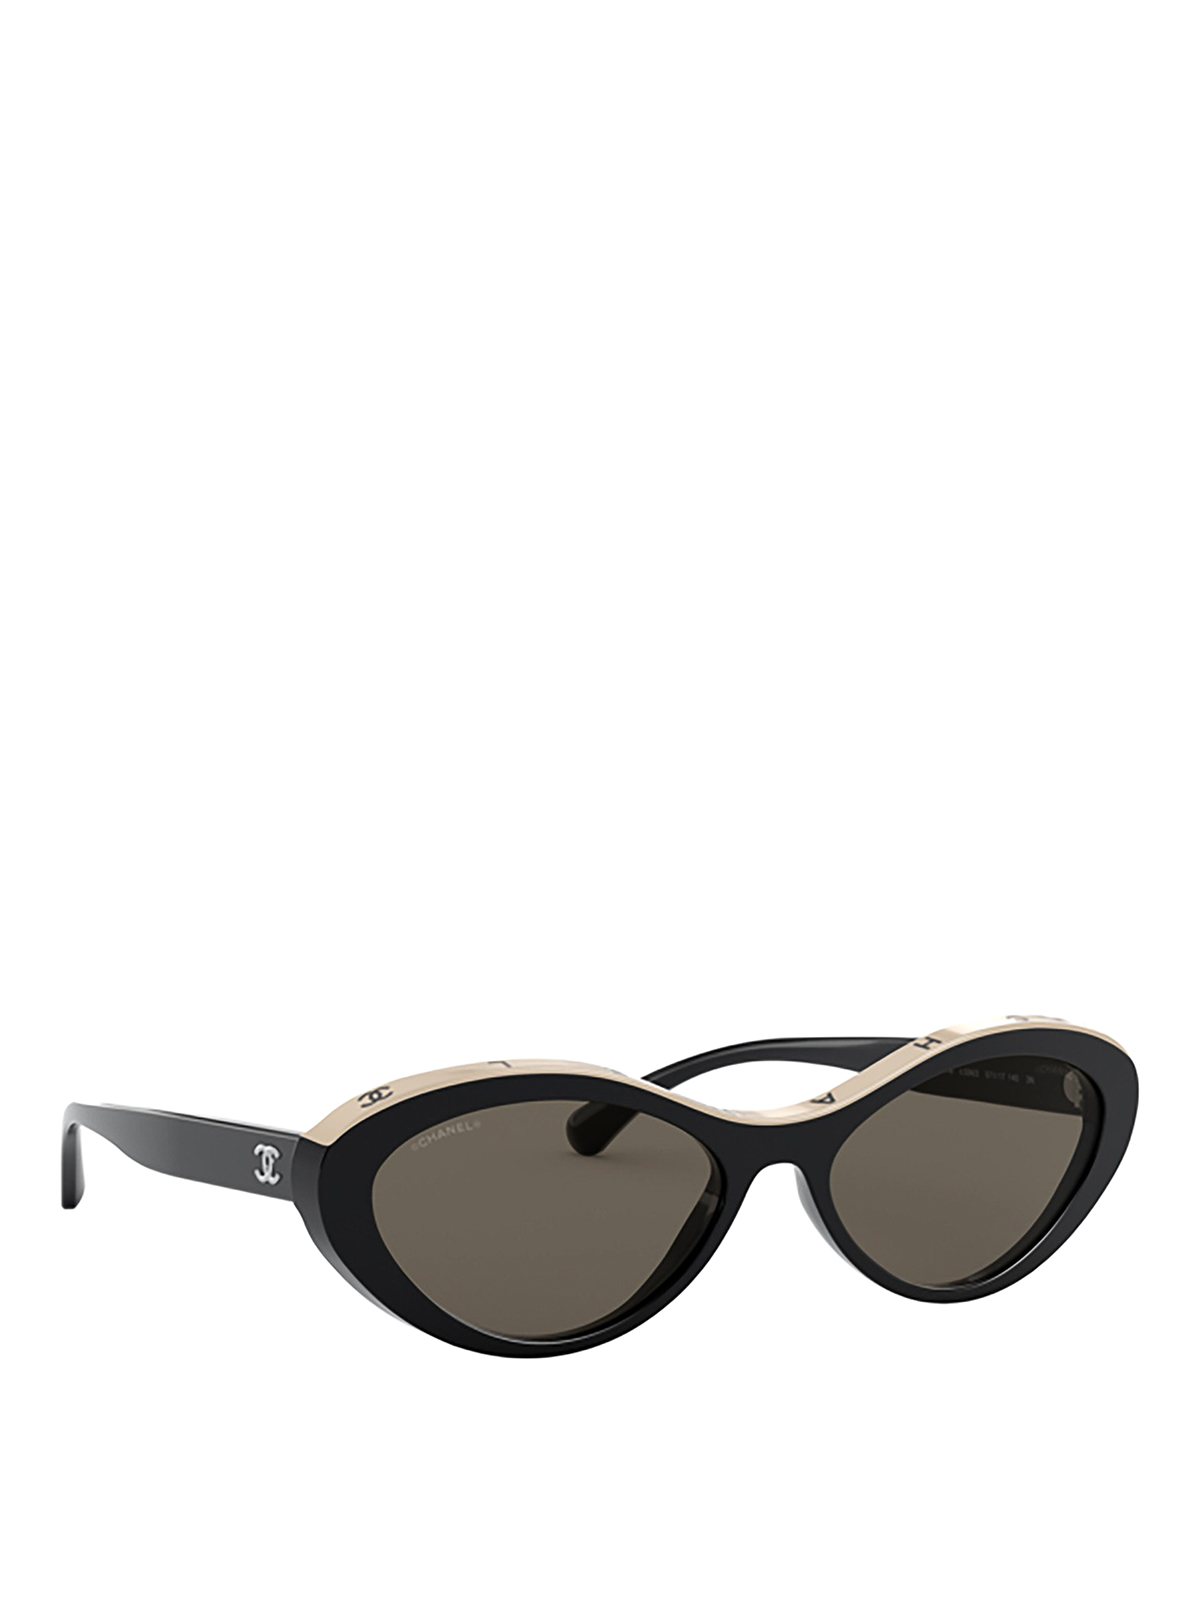 Chanel Black Cat Eye Sunglasses | ModeSens